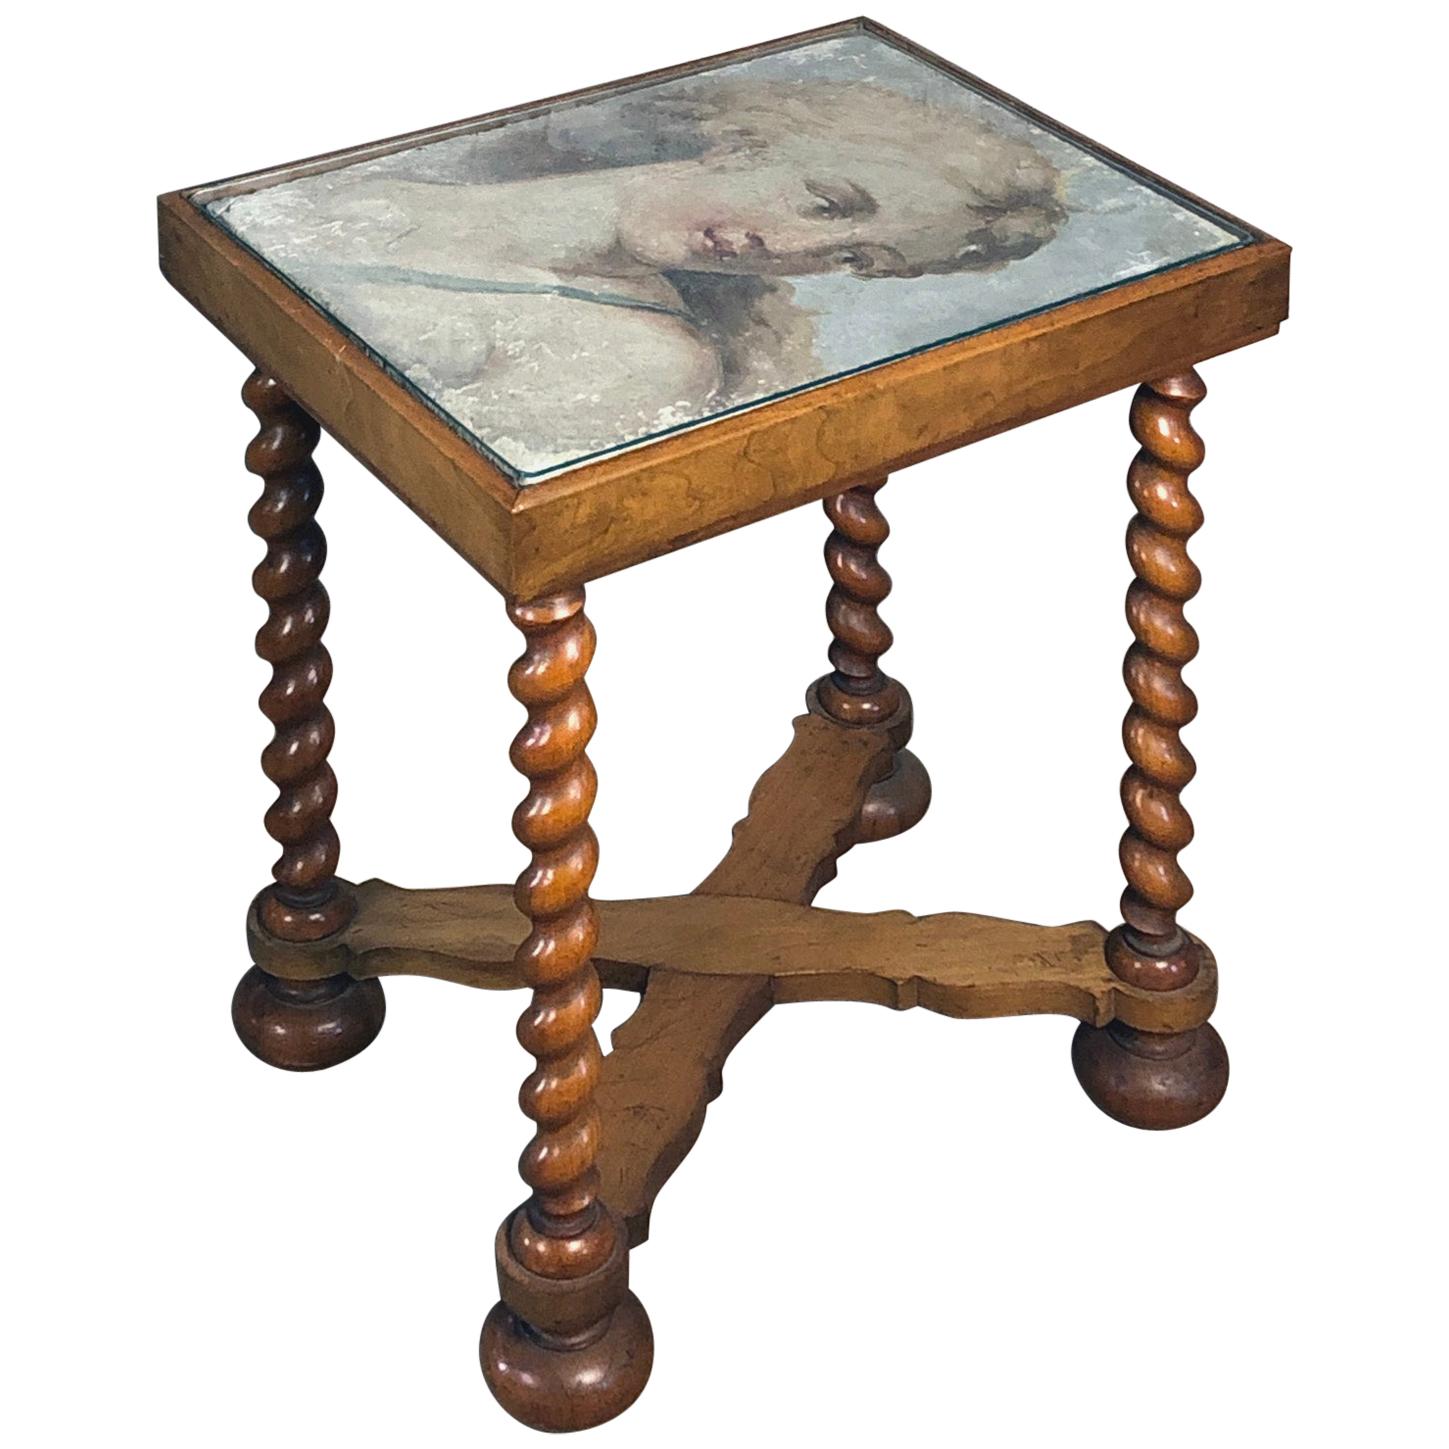 Petite table, le plateau est incrusté d'un cadre Fresco italien du 17ème siècle représentant Diane en vente